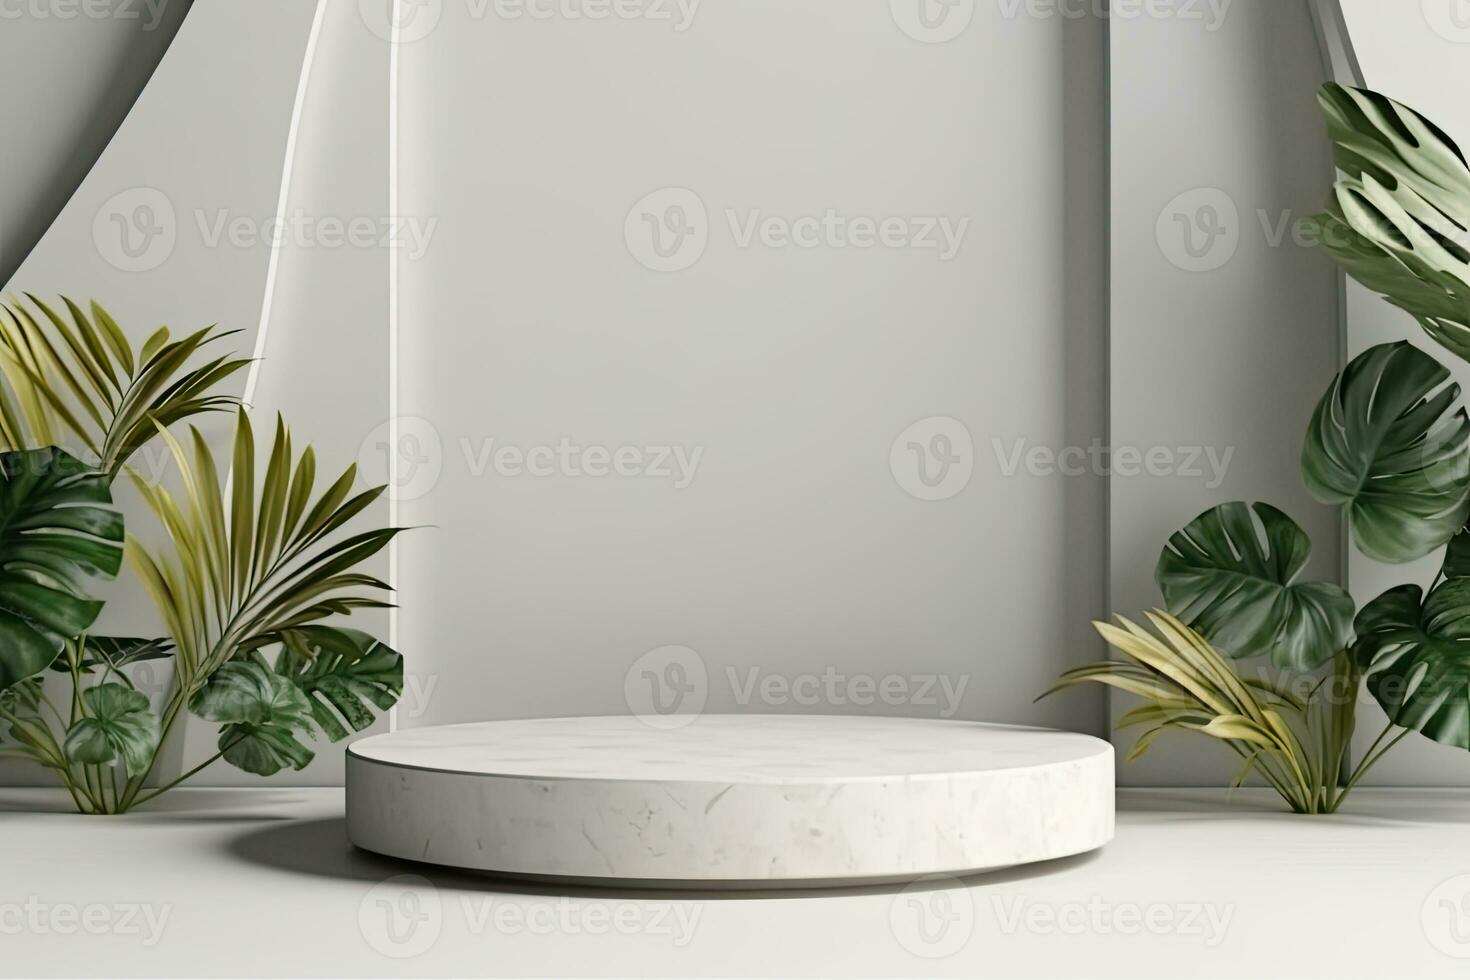 blanco redondo podio con un planta en eso y un blanco florero con un verde planta foto